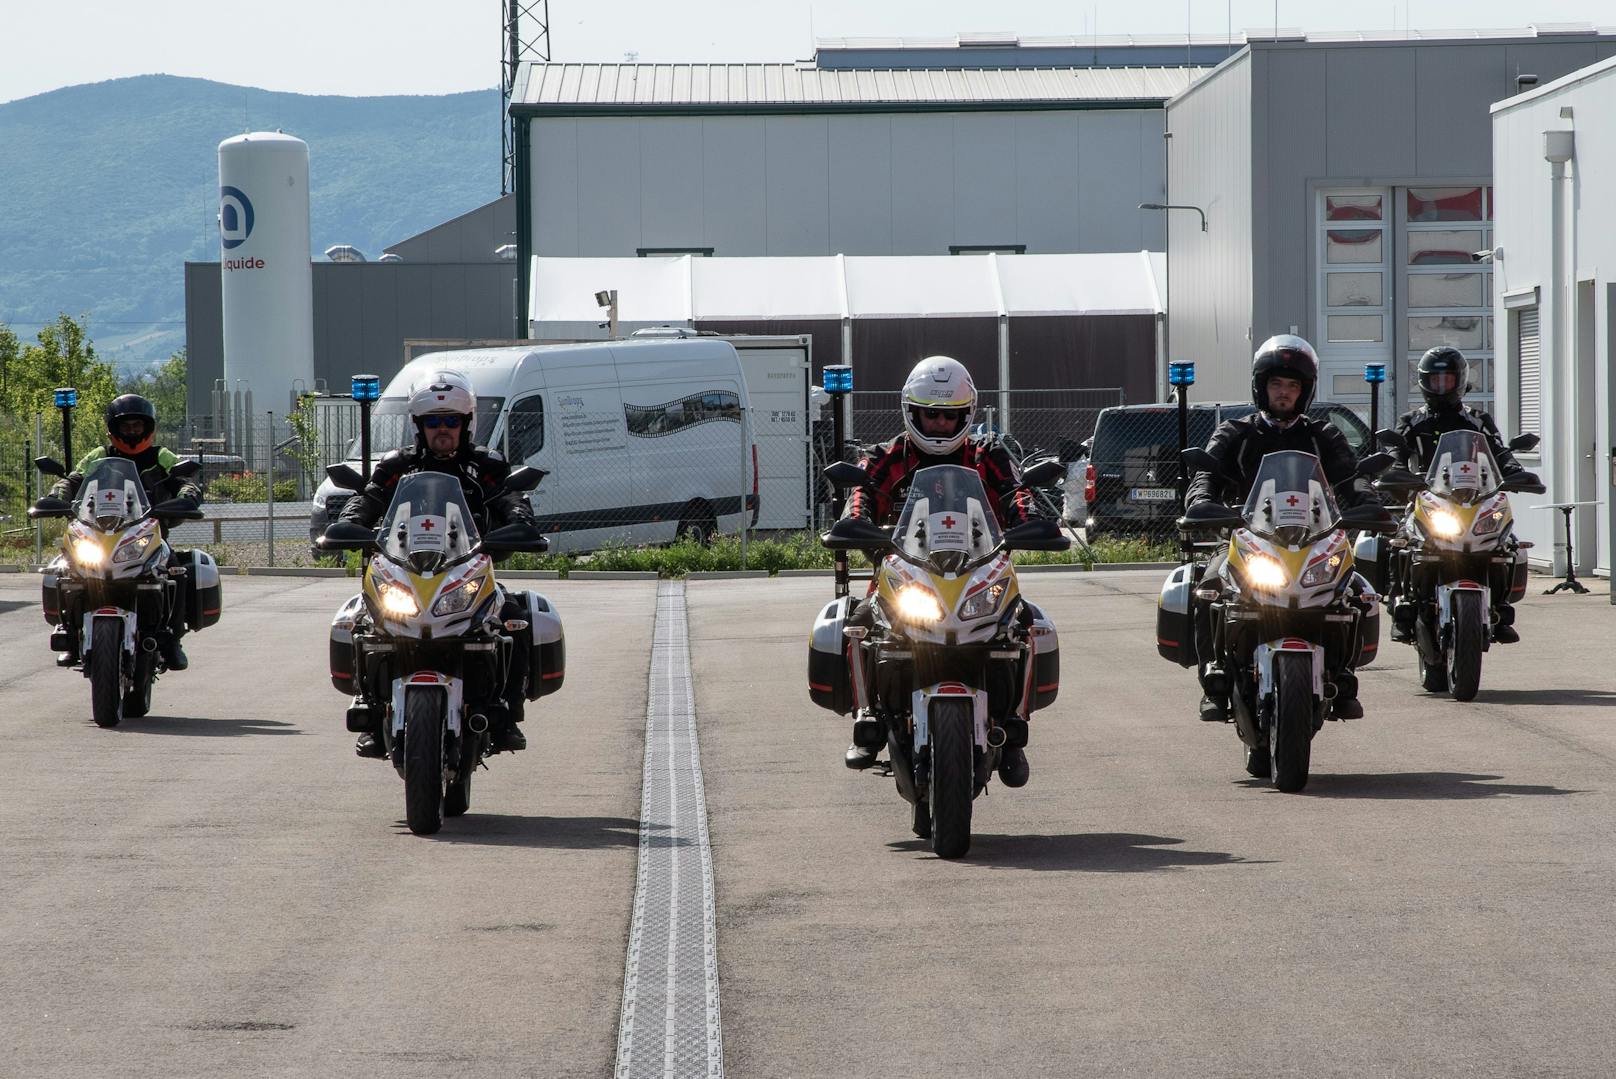 Bilder von der nun offiziell gegründeten Motorradstaffel.